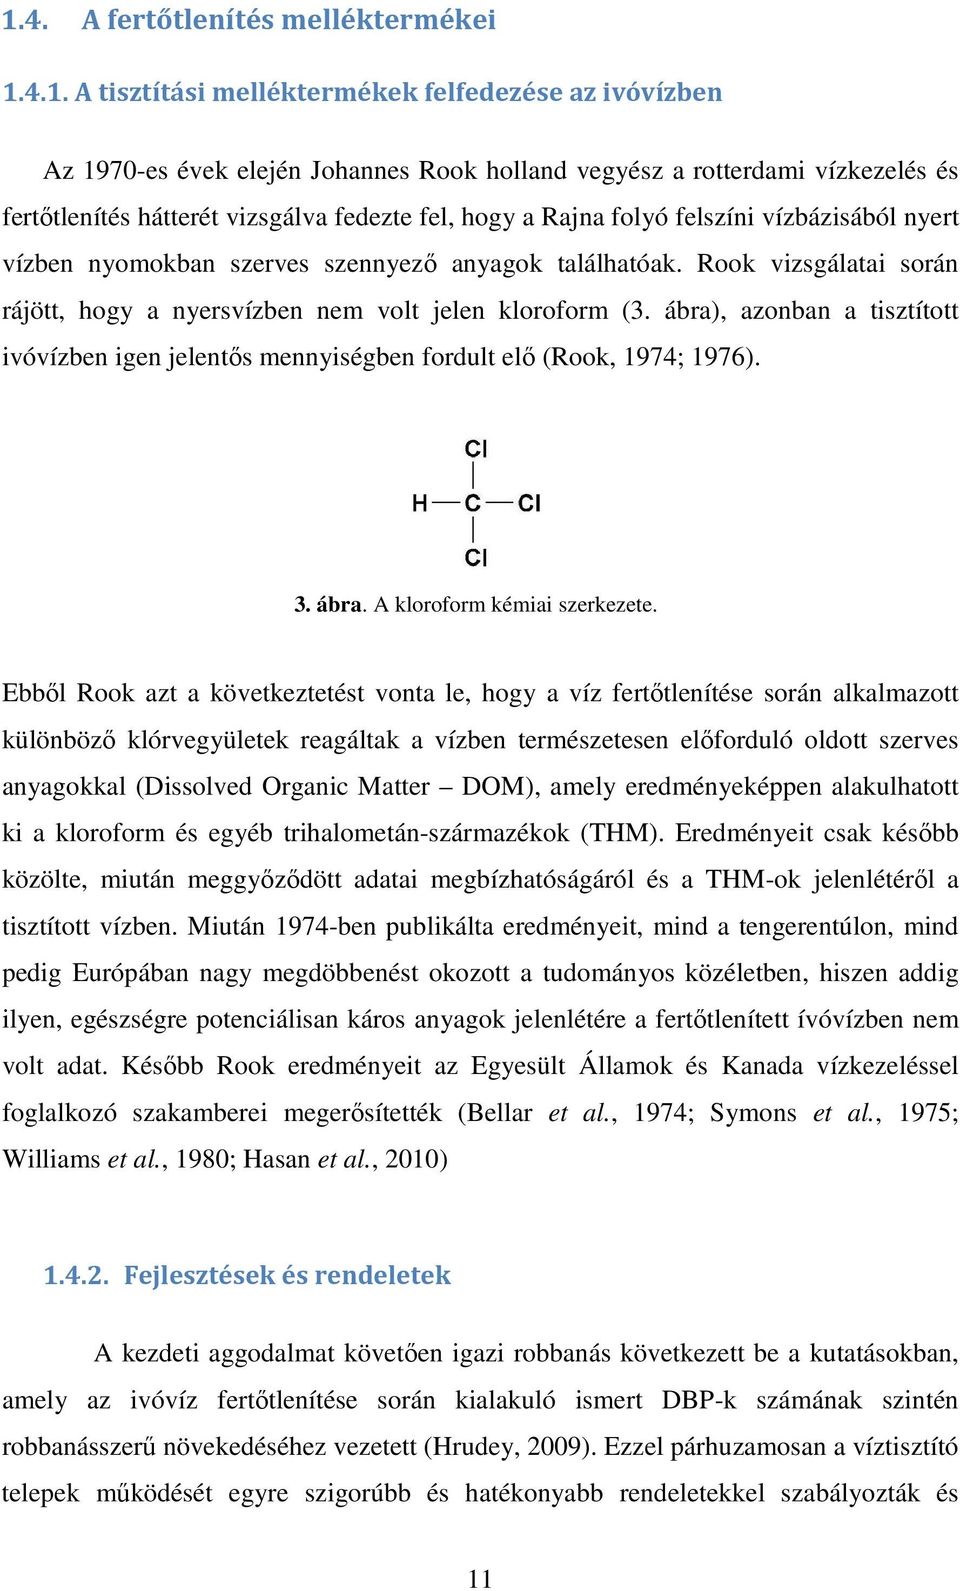 Rook vizsgálatai során rájött, hogy a nyersvízben nem volt jelen kloroform (3. ábra), azonban a tisztított ivóvízben igen jelentős mennyiségben fordult elő (Rook, 1974; 1976). 3. ábra. A kloroform kémiai szerkezete.